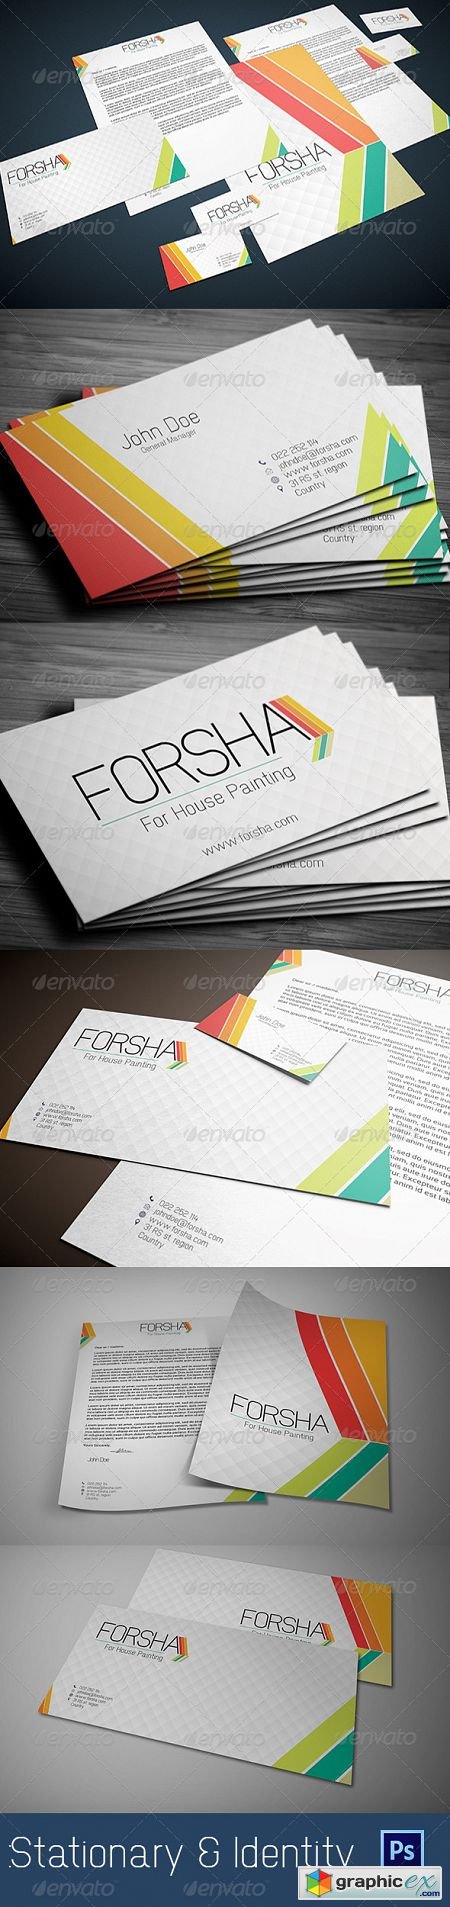 Stationary & Identity: Forsha